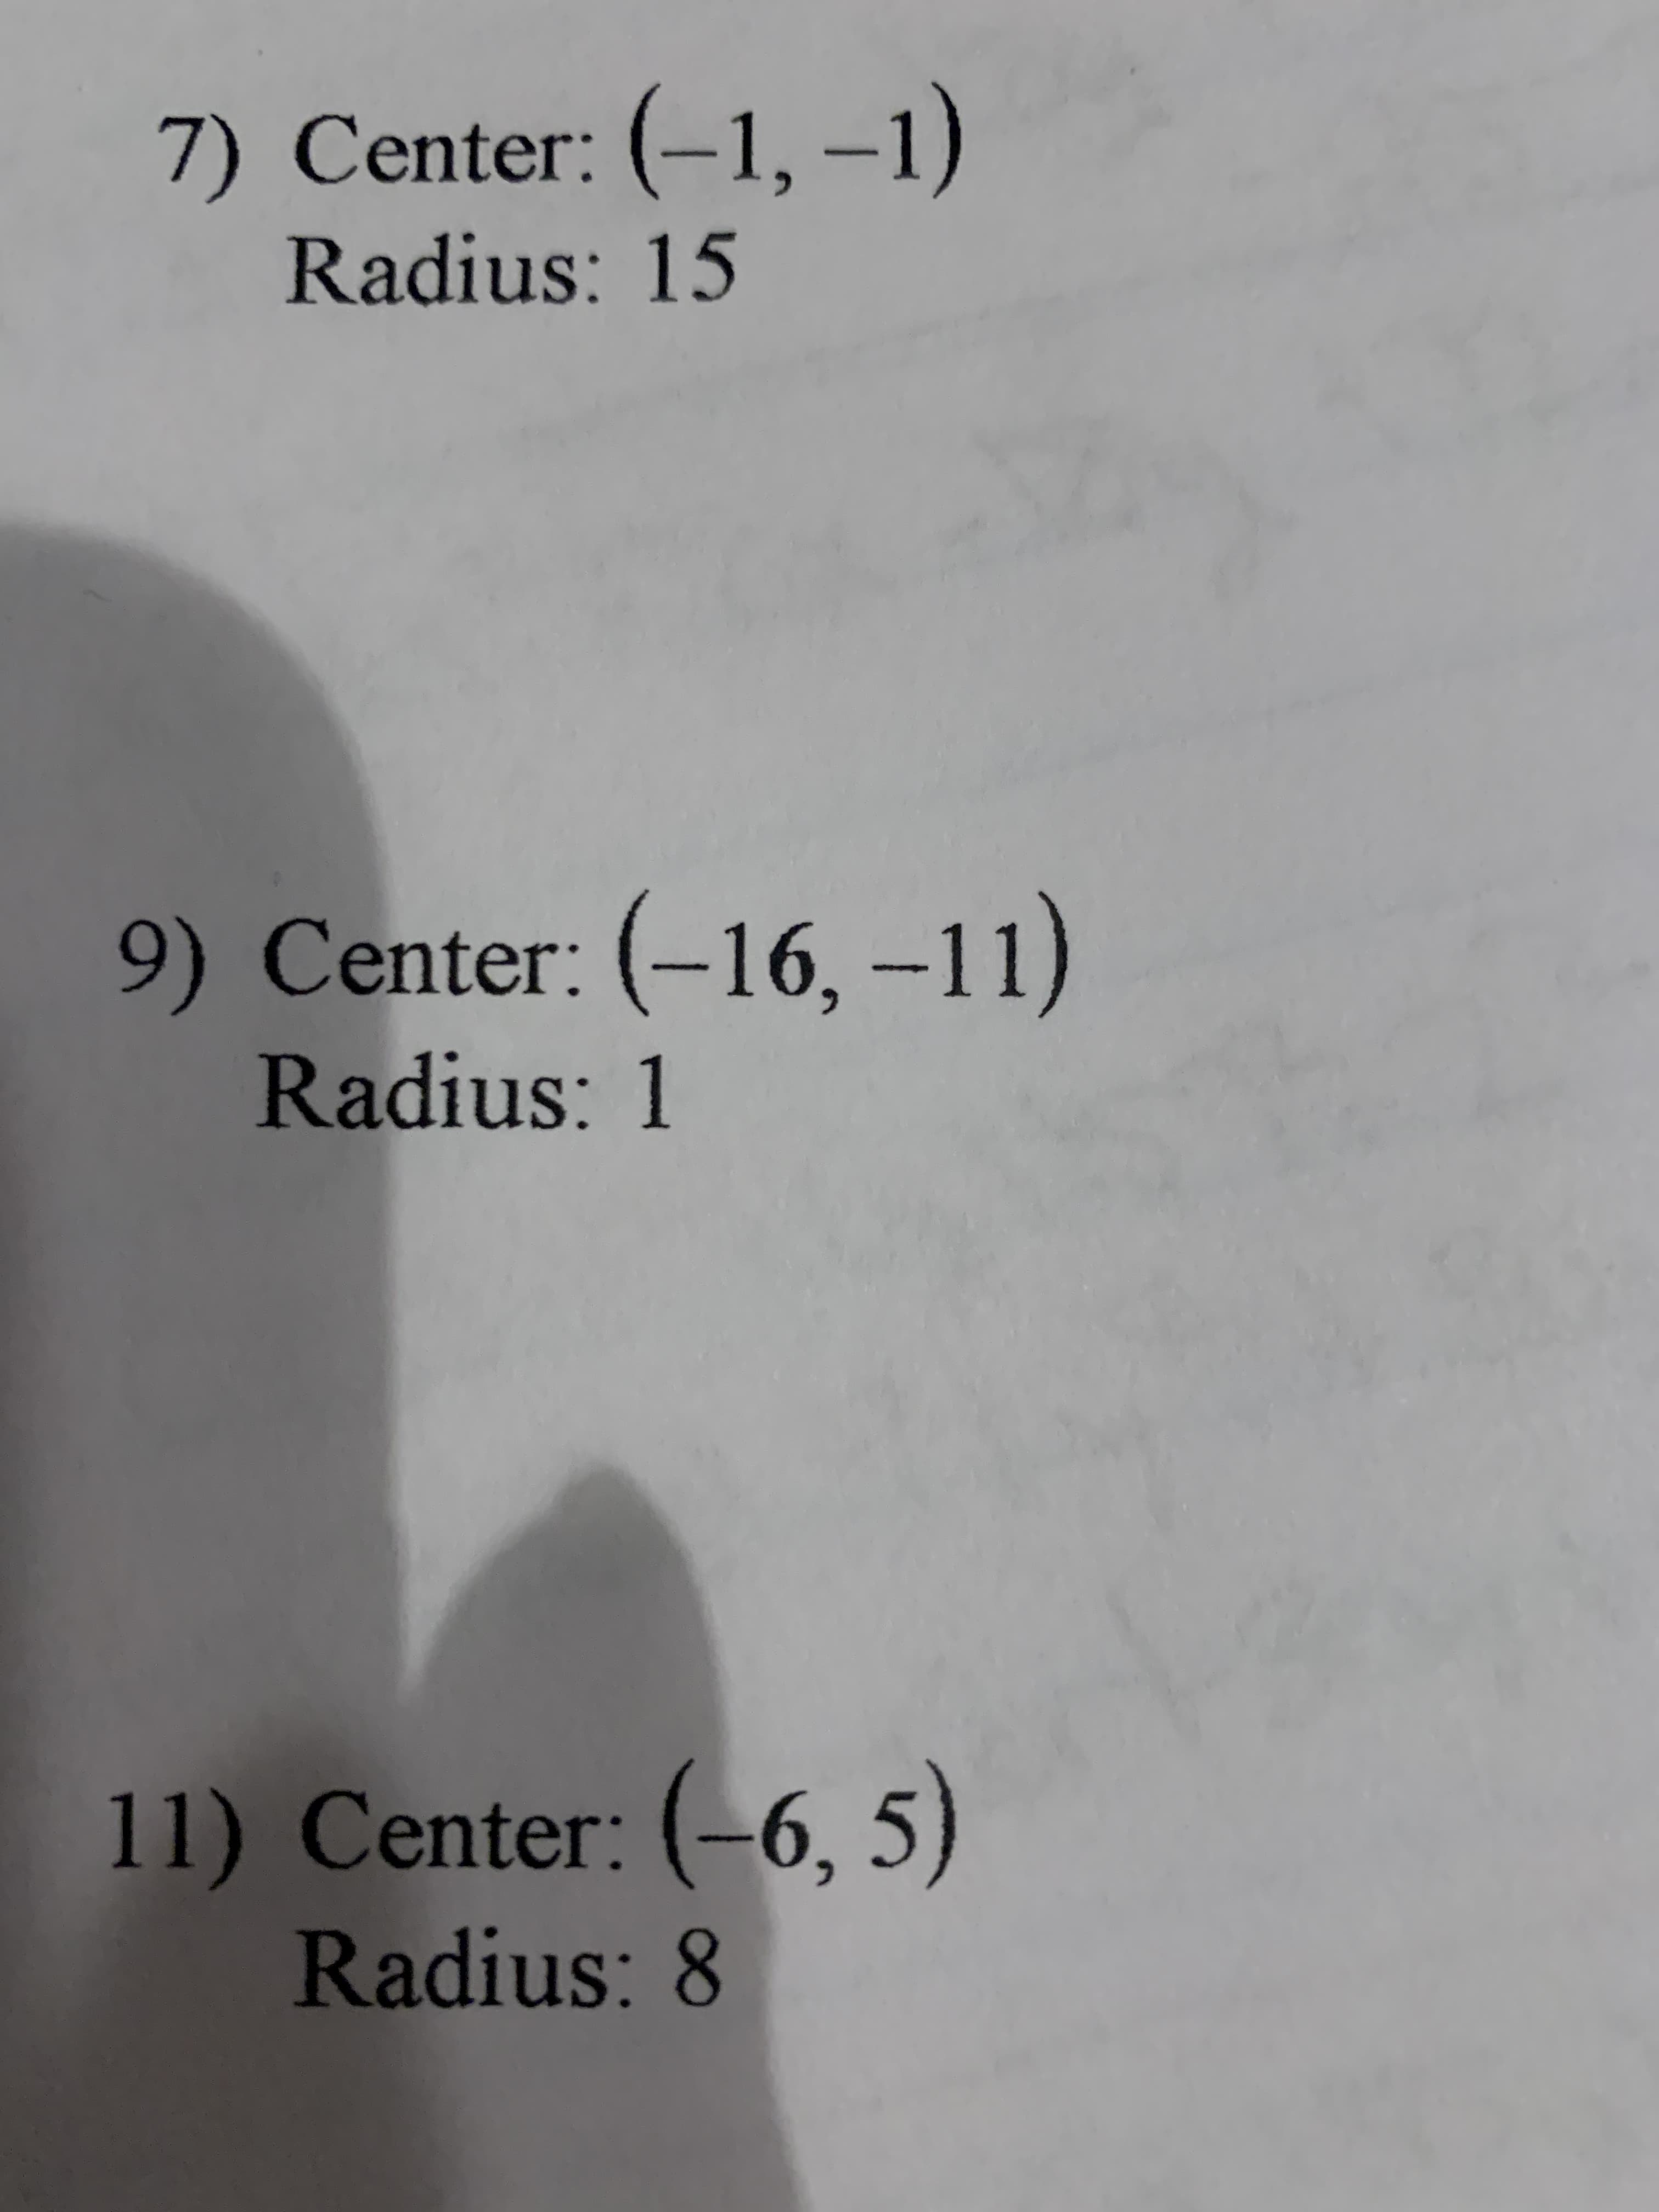 7) Center: (–1, -1)
Radius: 15
9) Center: (-16,-11)
Radius: 1
11) Center: (-6, 5)
Radius: 8
